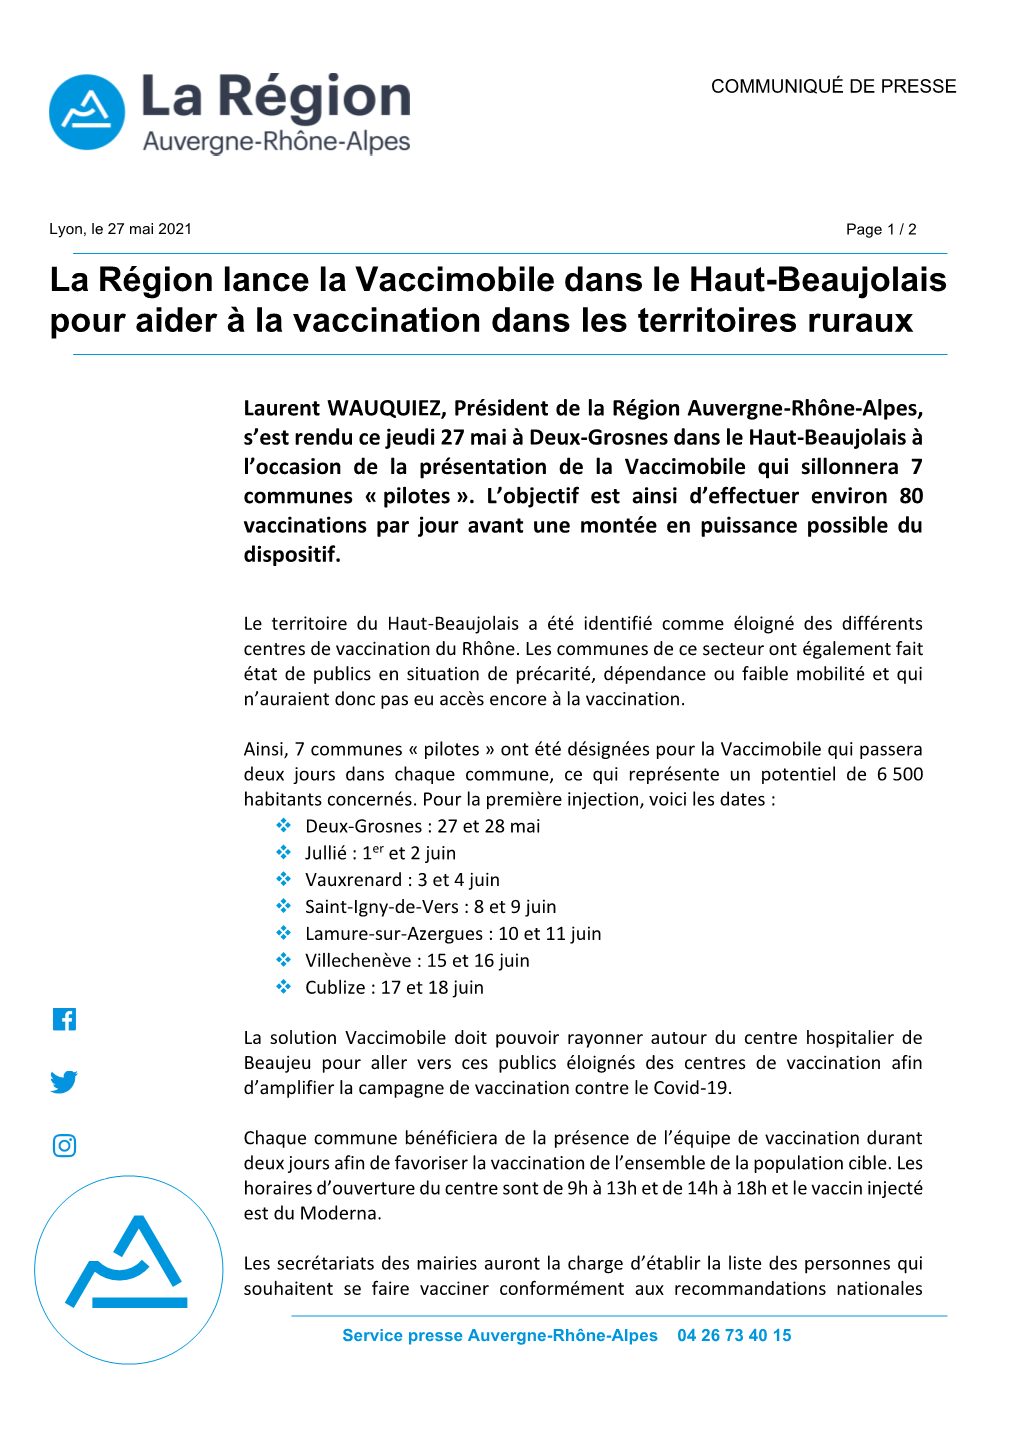 La Région Lance La Vaccimobile Dans Le Haut-Beaujolais Pour Aider À La Vaccination Dans Les Territoires Ruraux